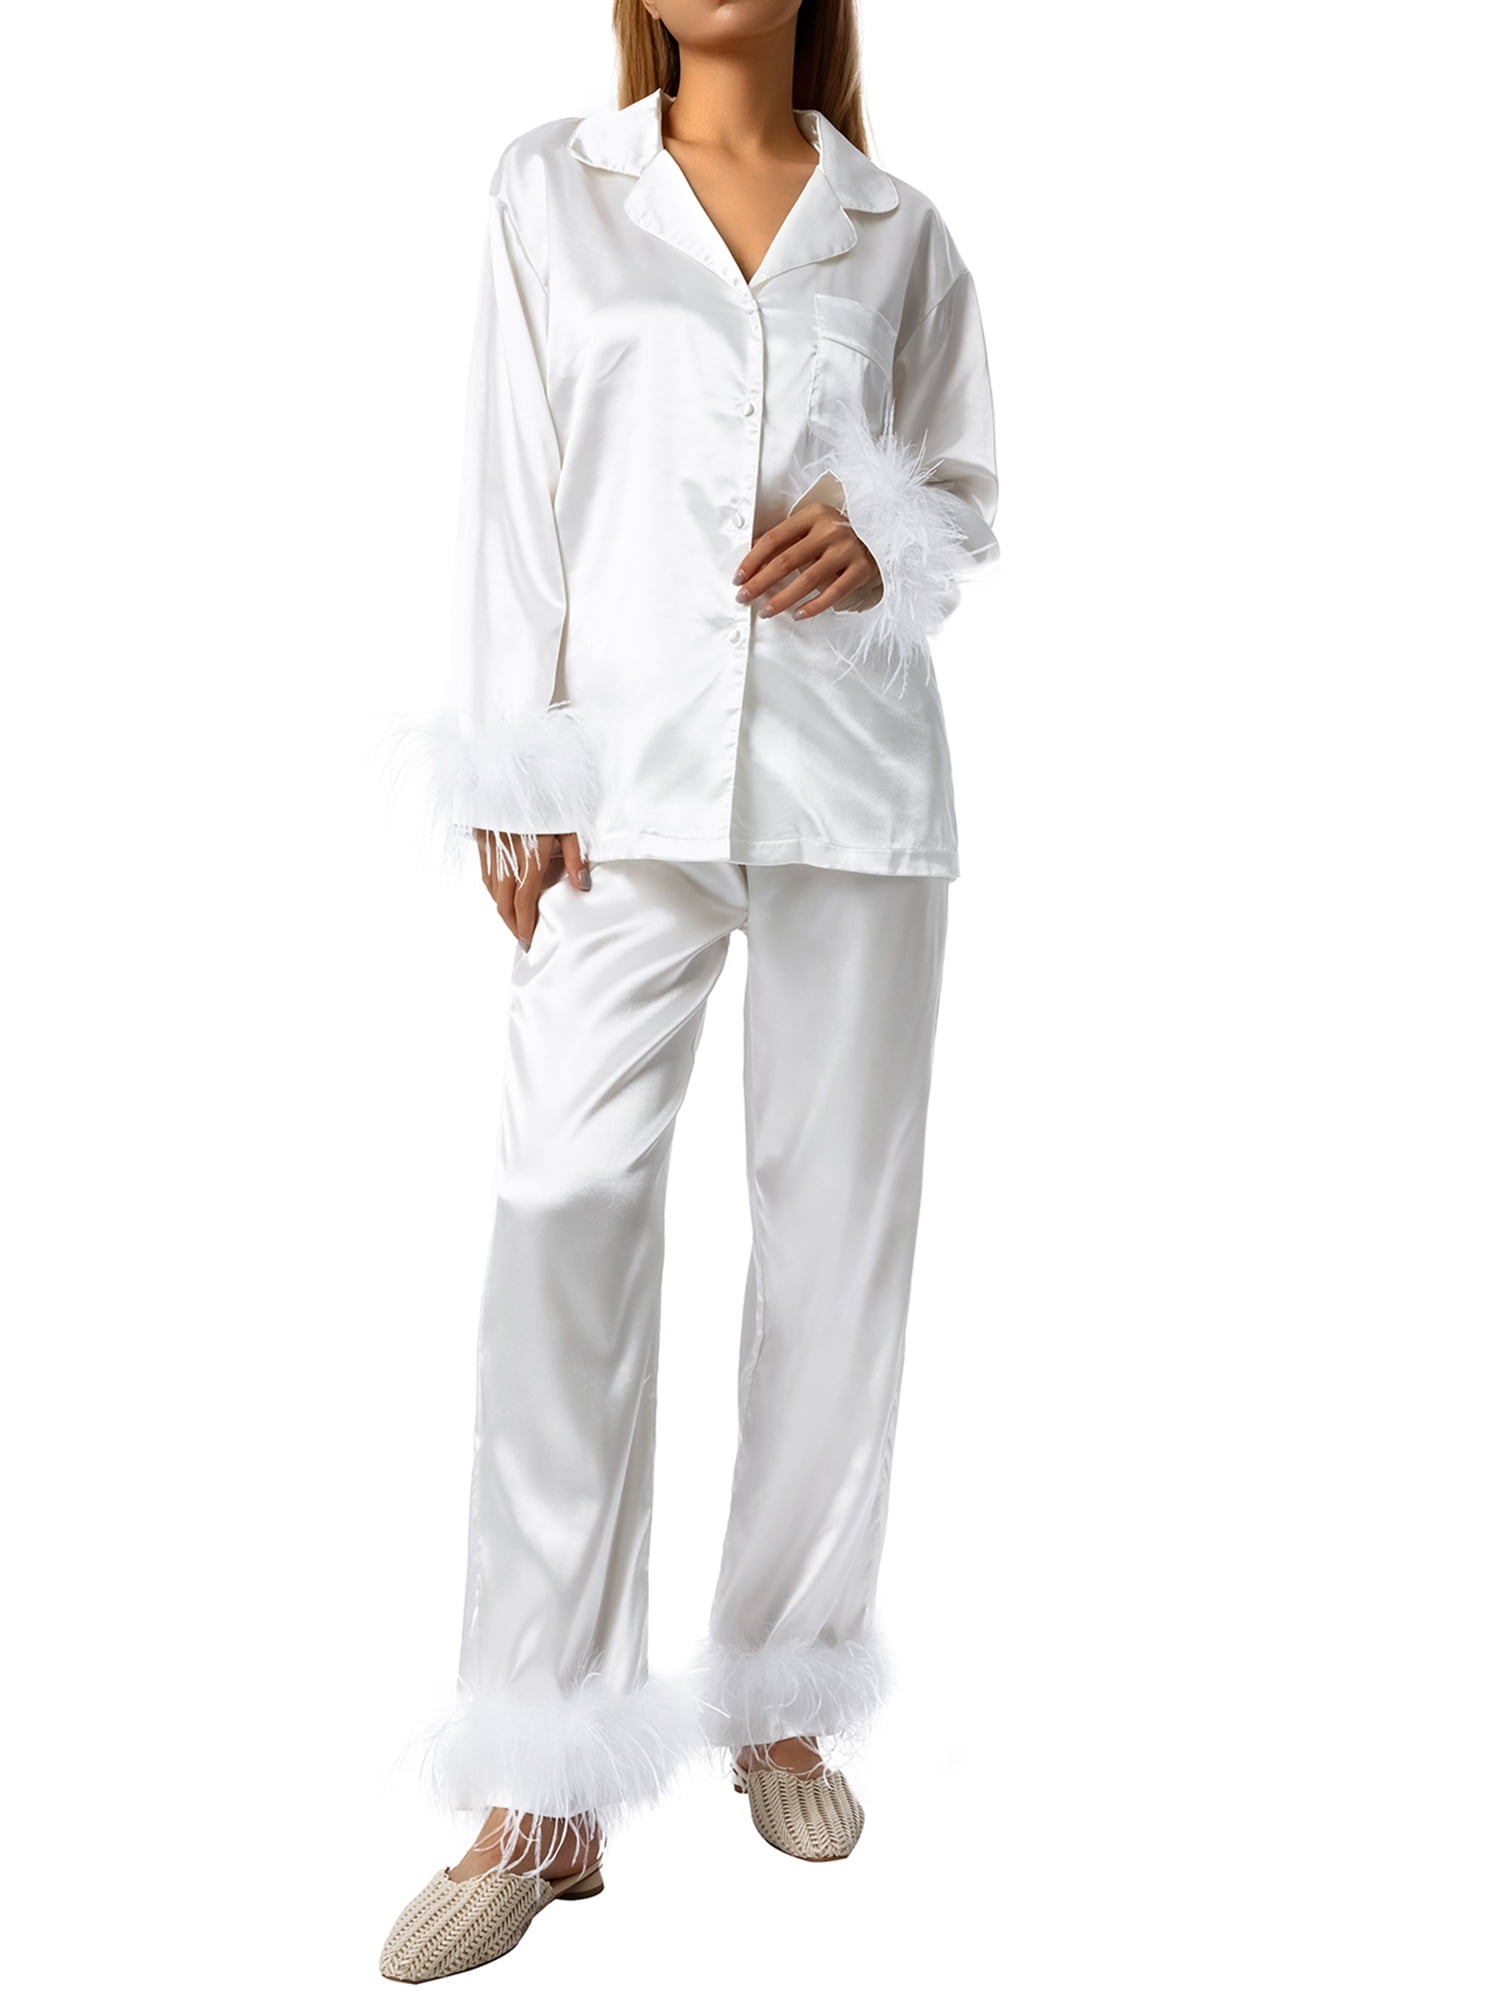 enkel en alleen onderwerpen Eigenaardig wybzd Women Silk Satin Pajamas Set Button Down Long Sleeve Sleepwear  Feather Trim Nightwear Loungewear Pj Set White XL - Walmart.com